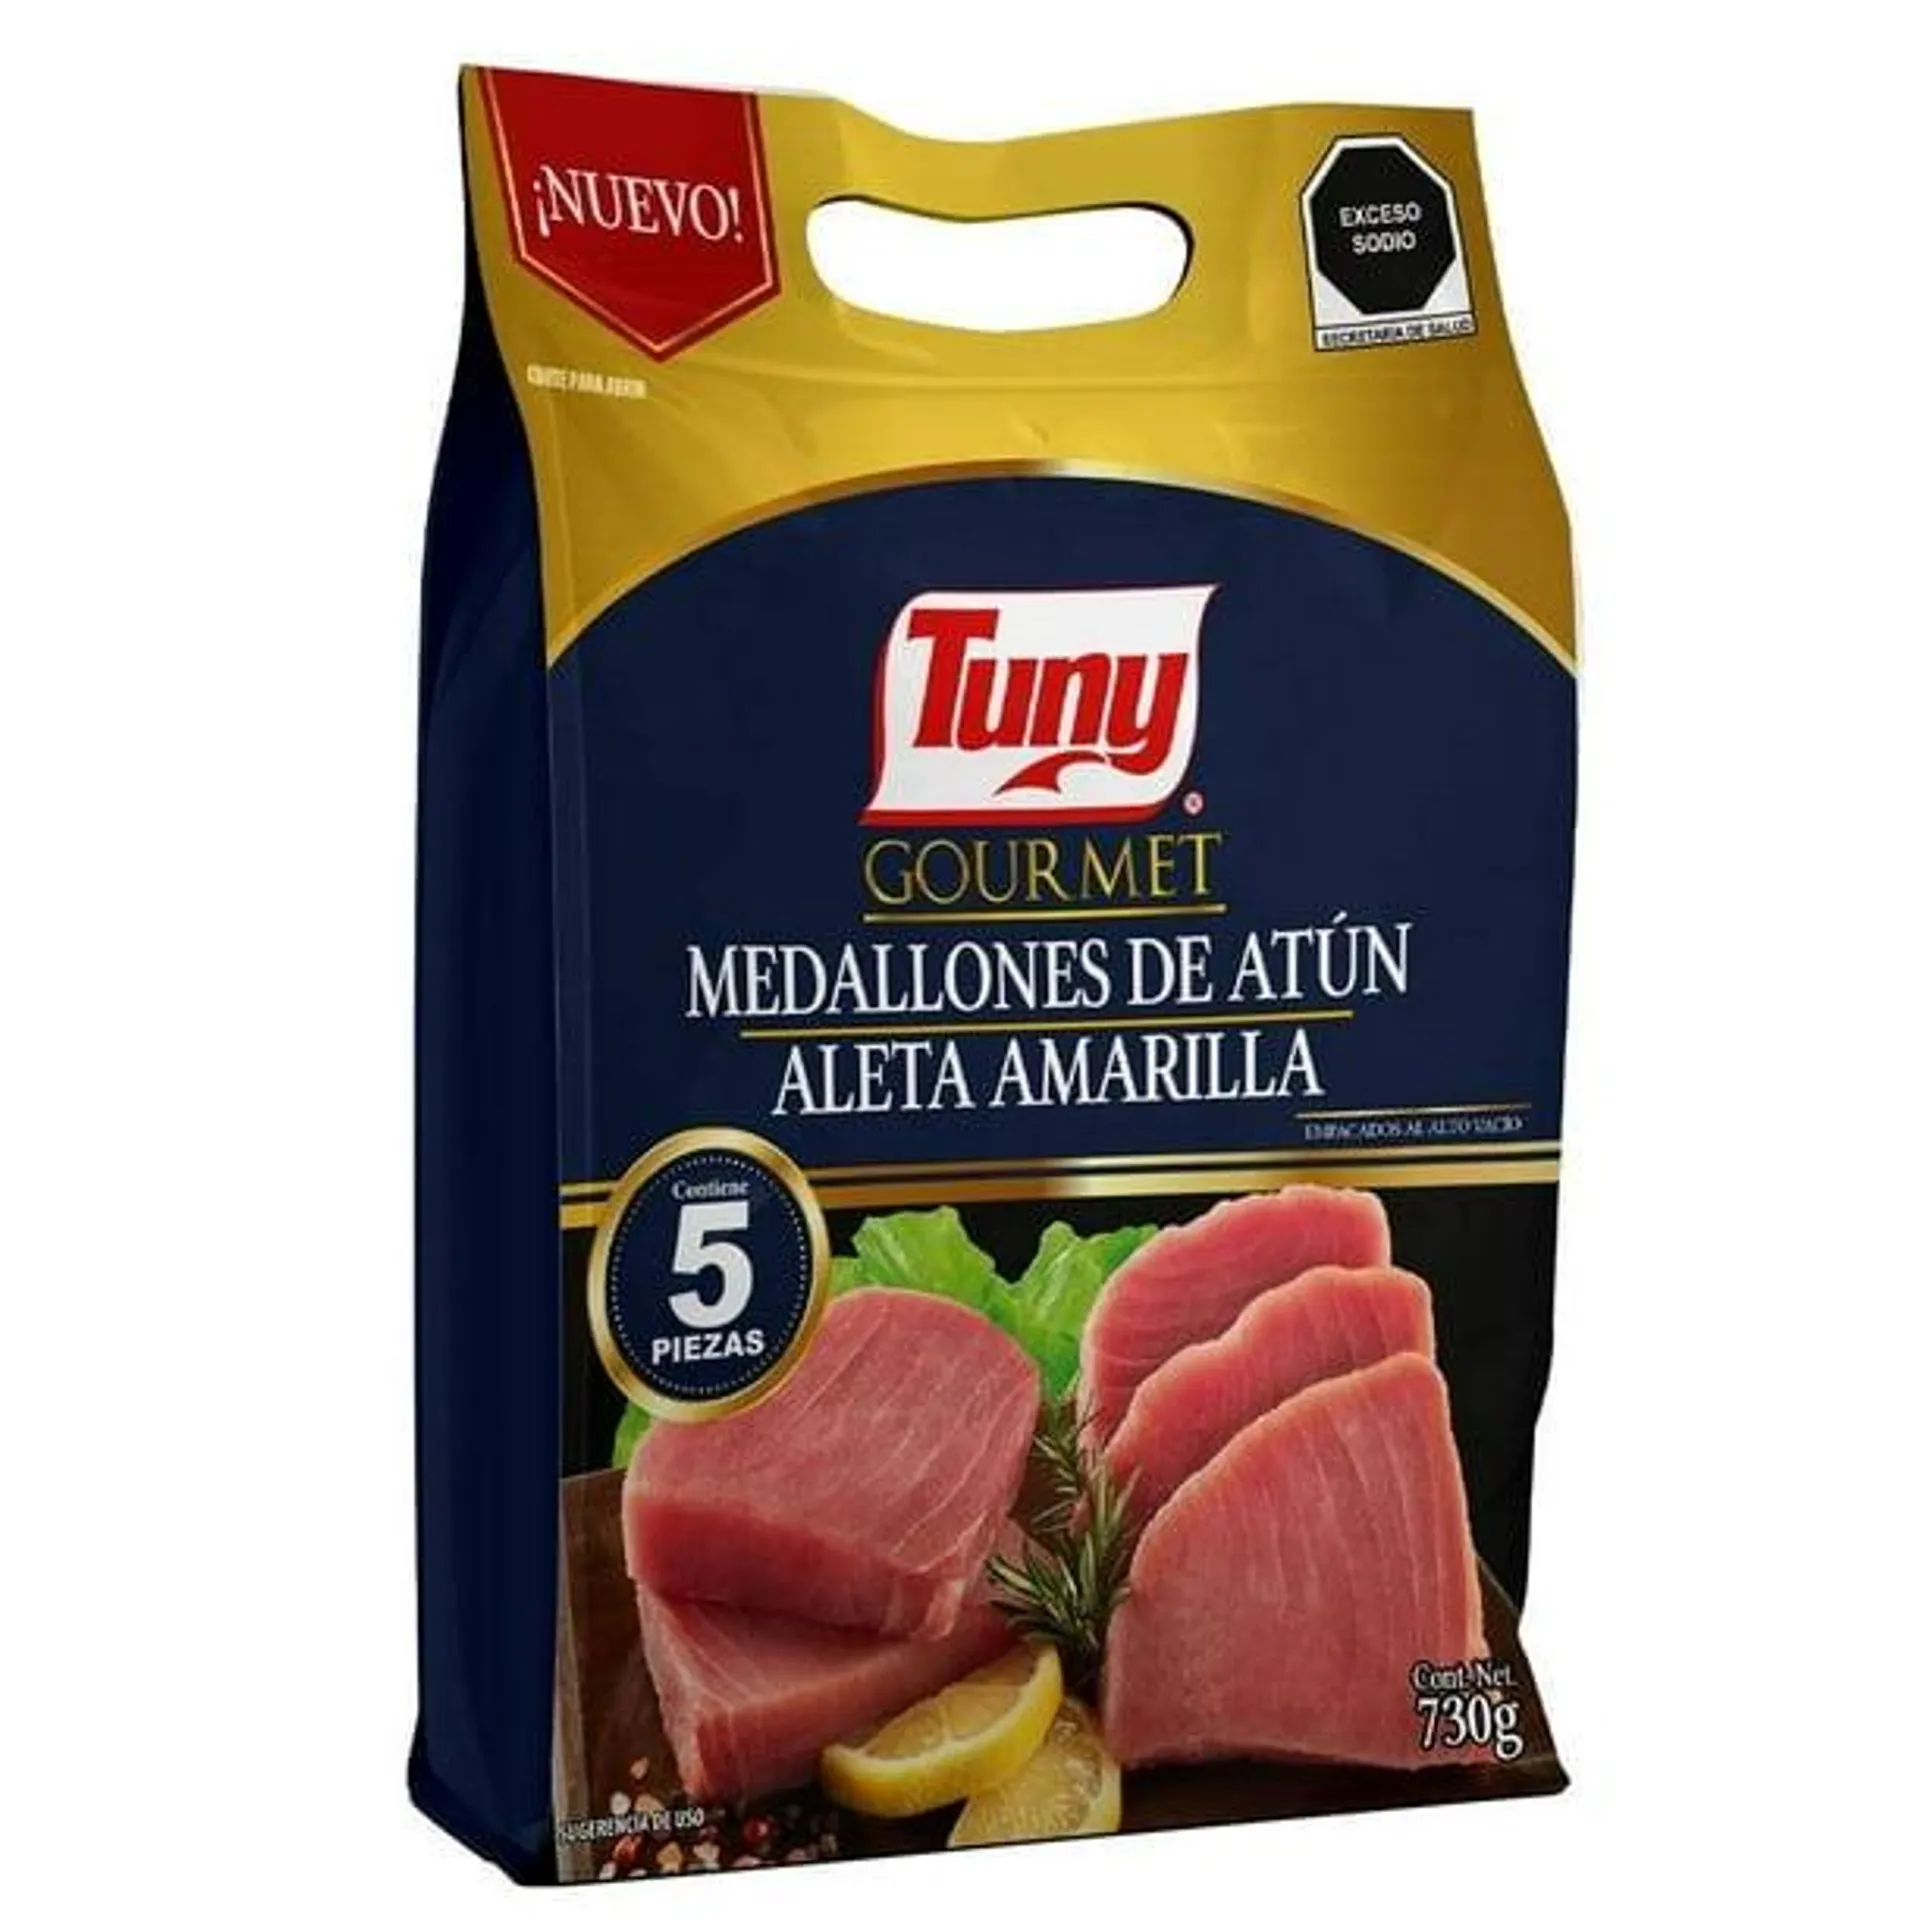 Medallones de atún Tuny gourmet aleta amarilla 5 pzas